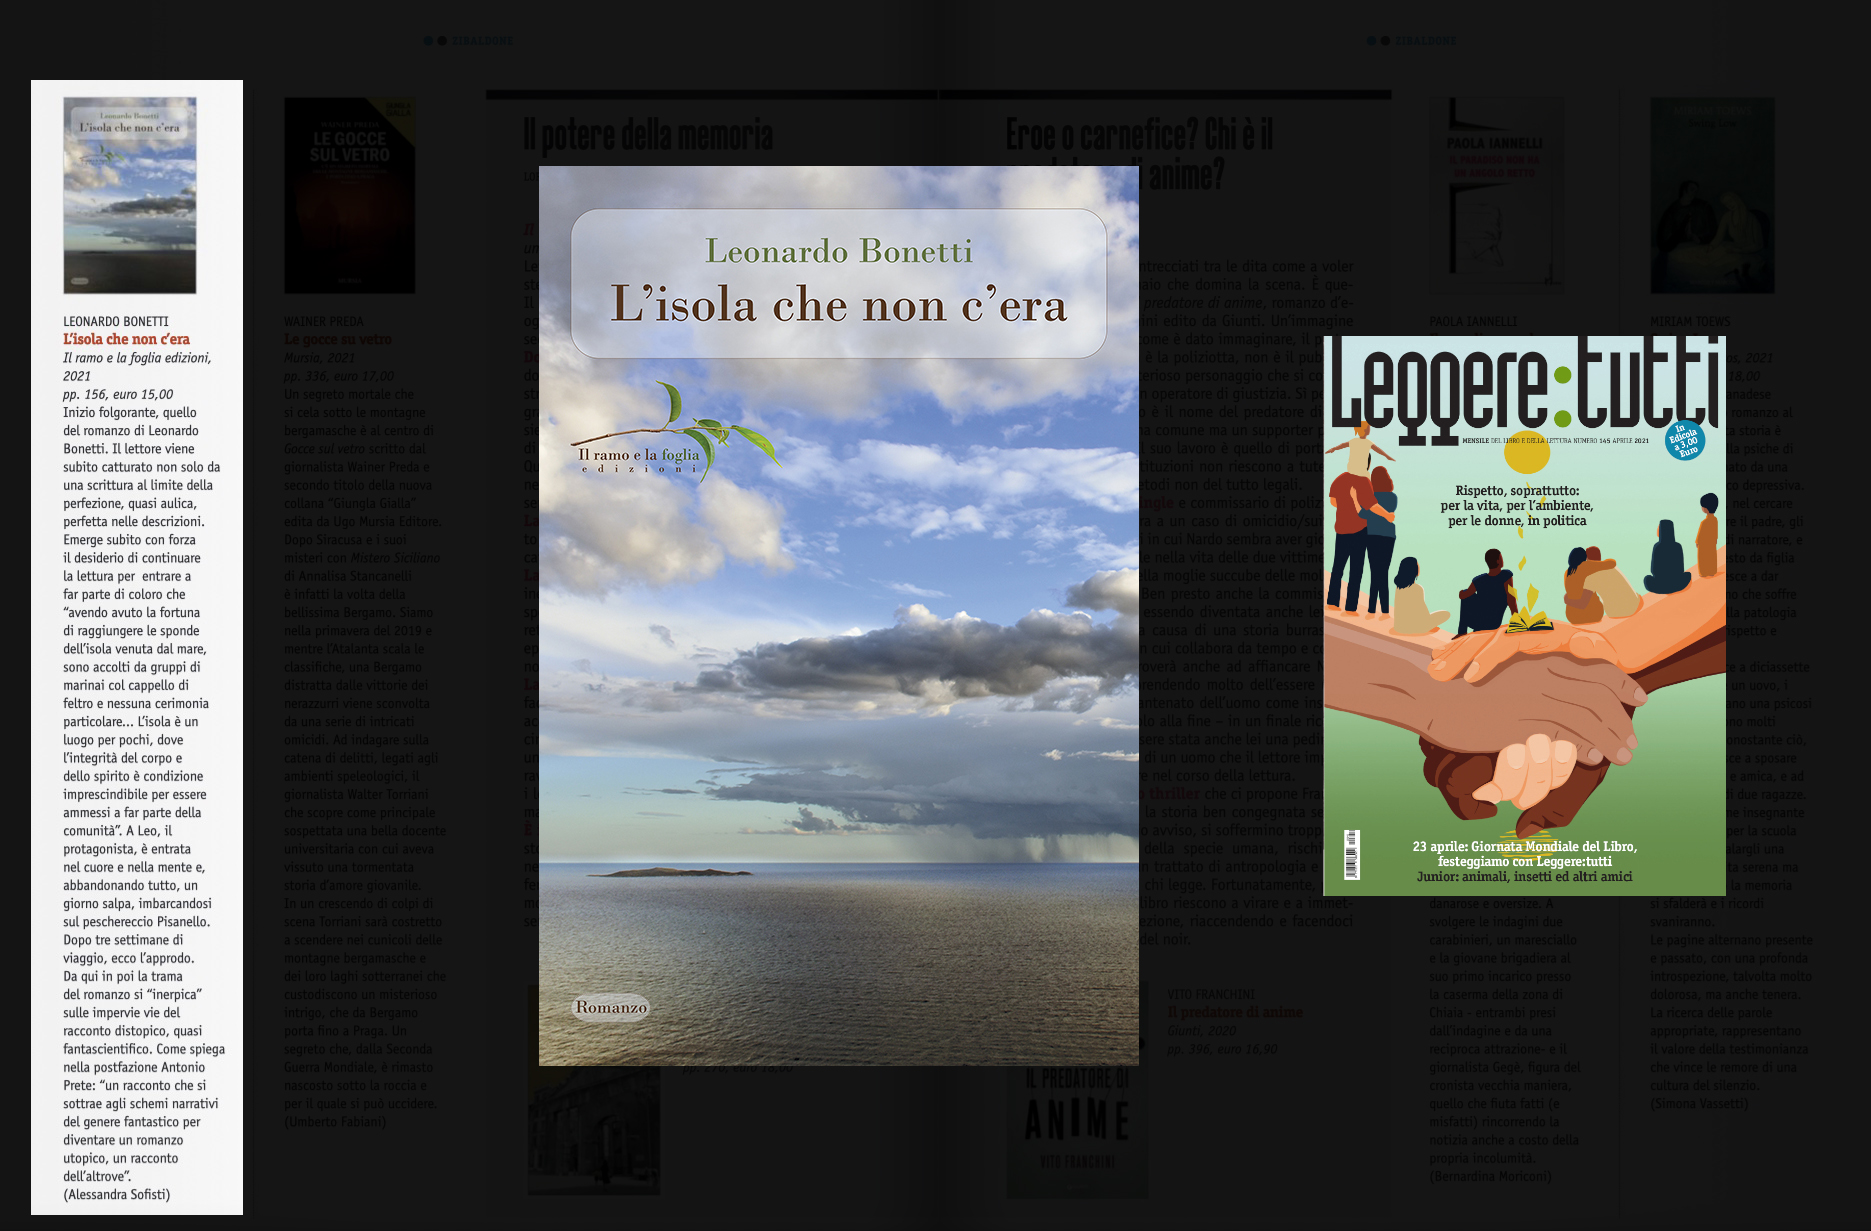 Copertina di “Leggere:tutti” e copertina di “L’isola che non c’era”